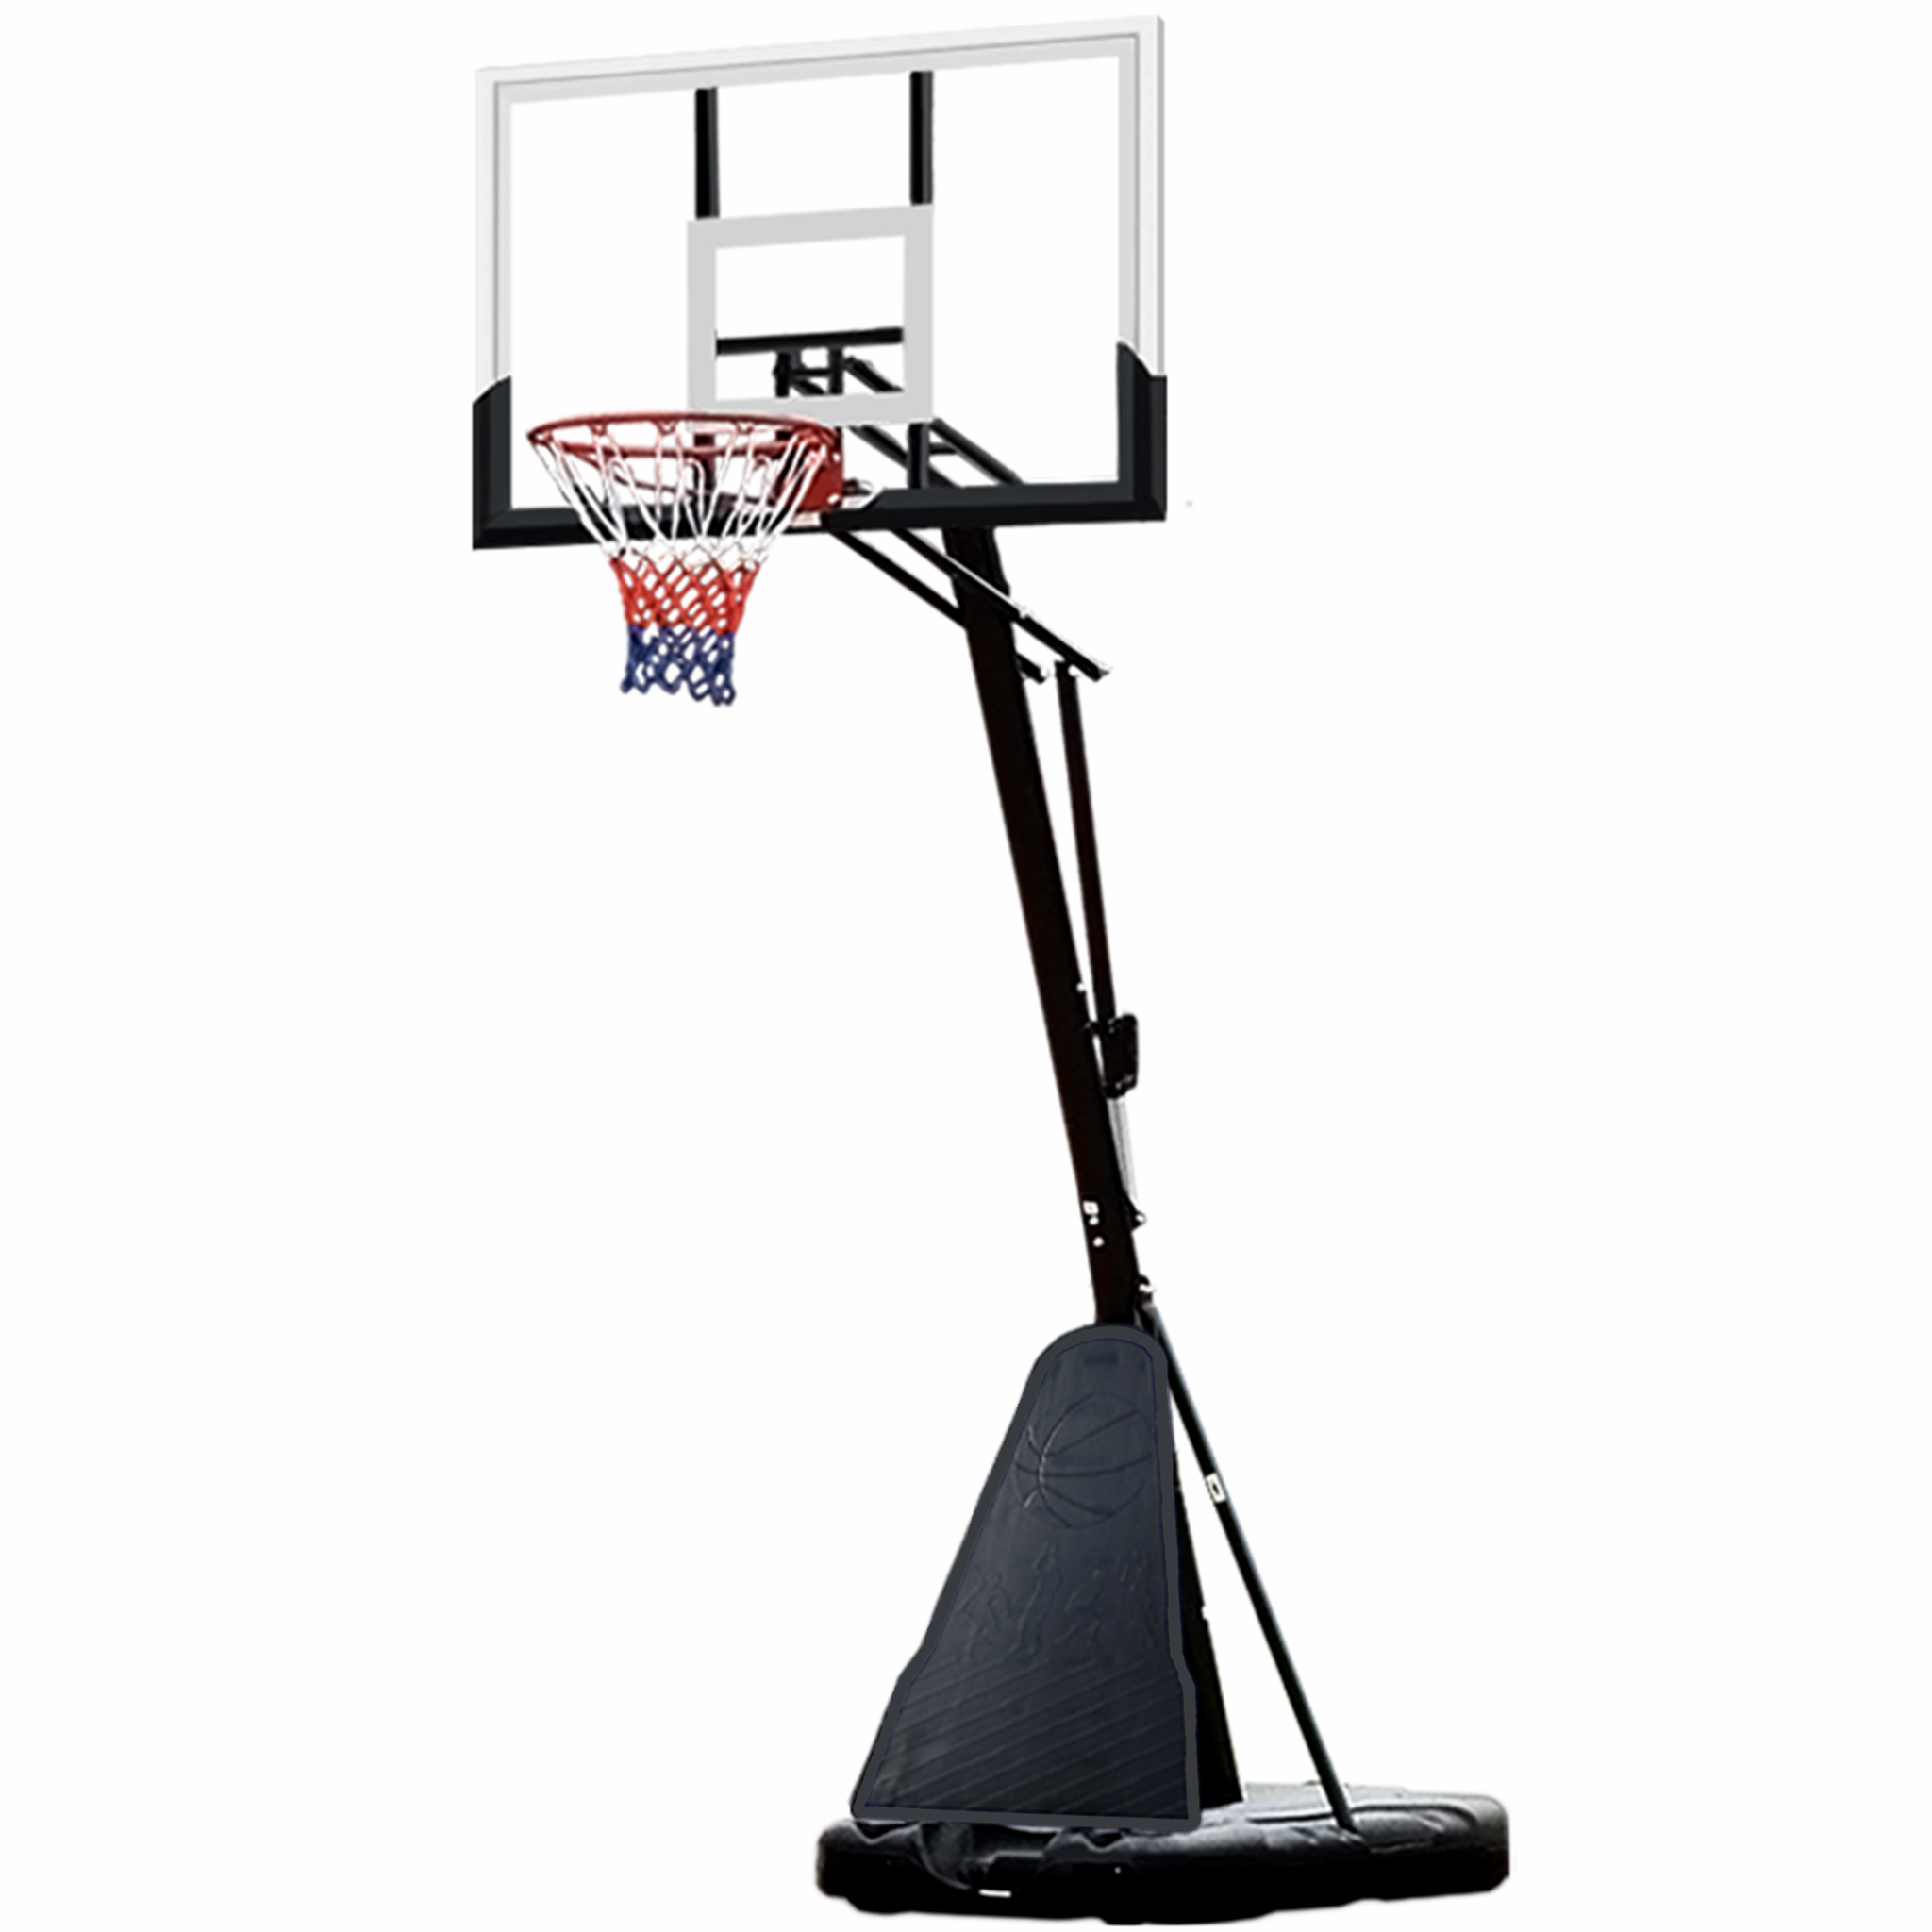 Basketkorg med ställning | Dunkbar/fjädrad | Buzzer